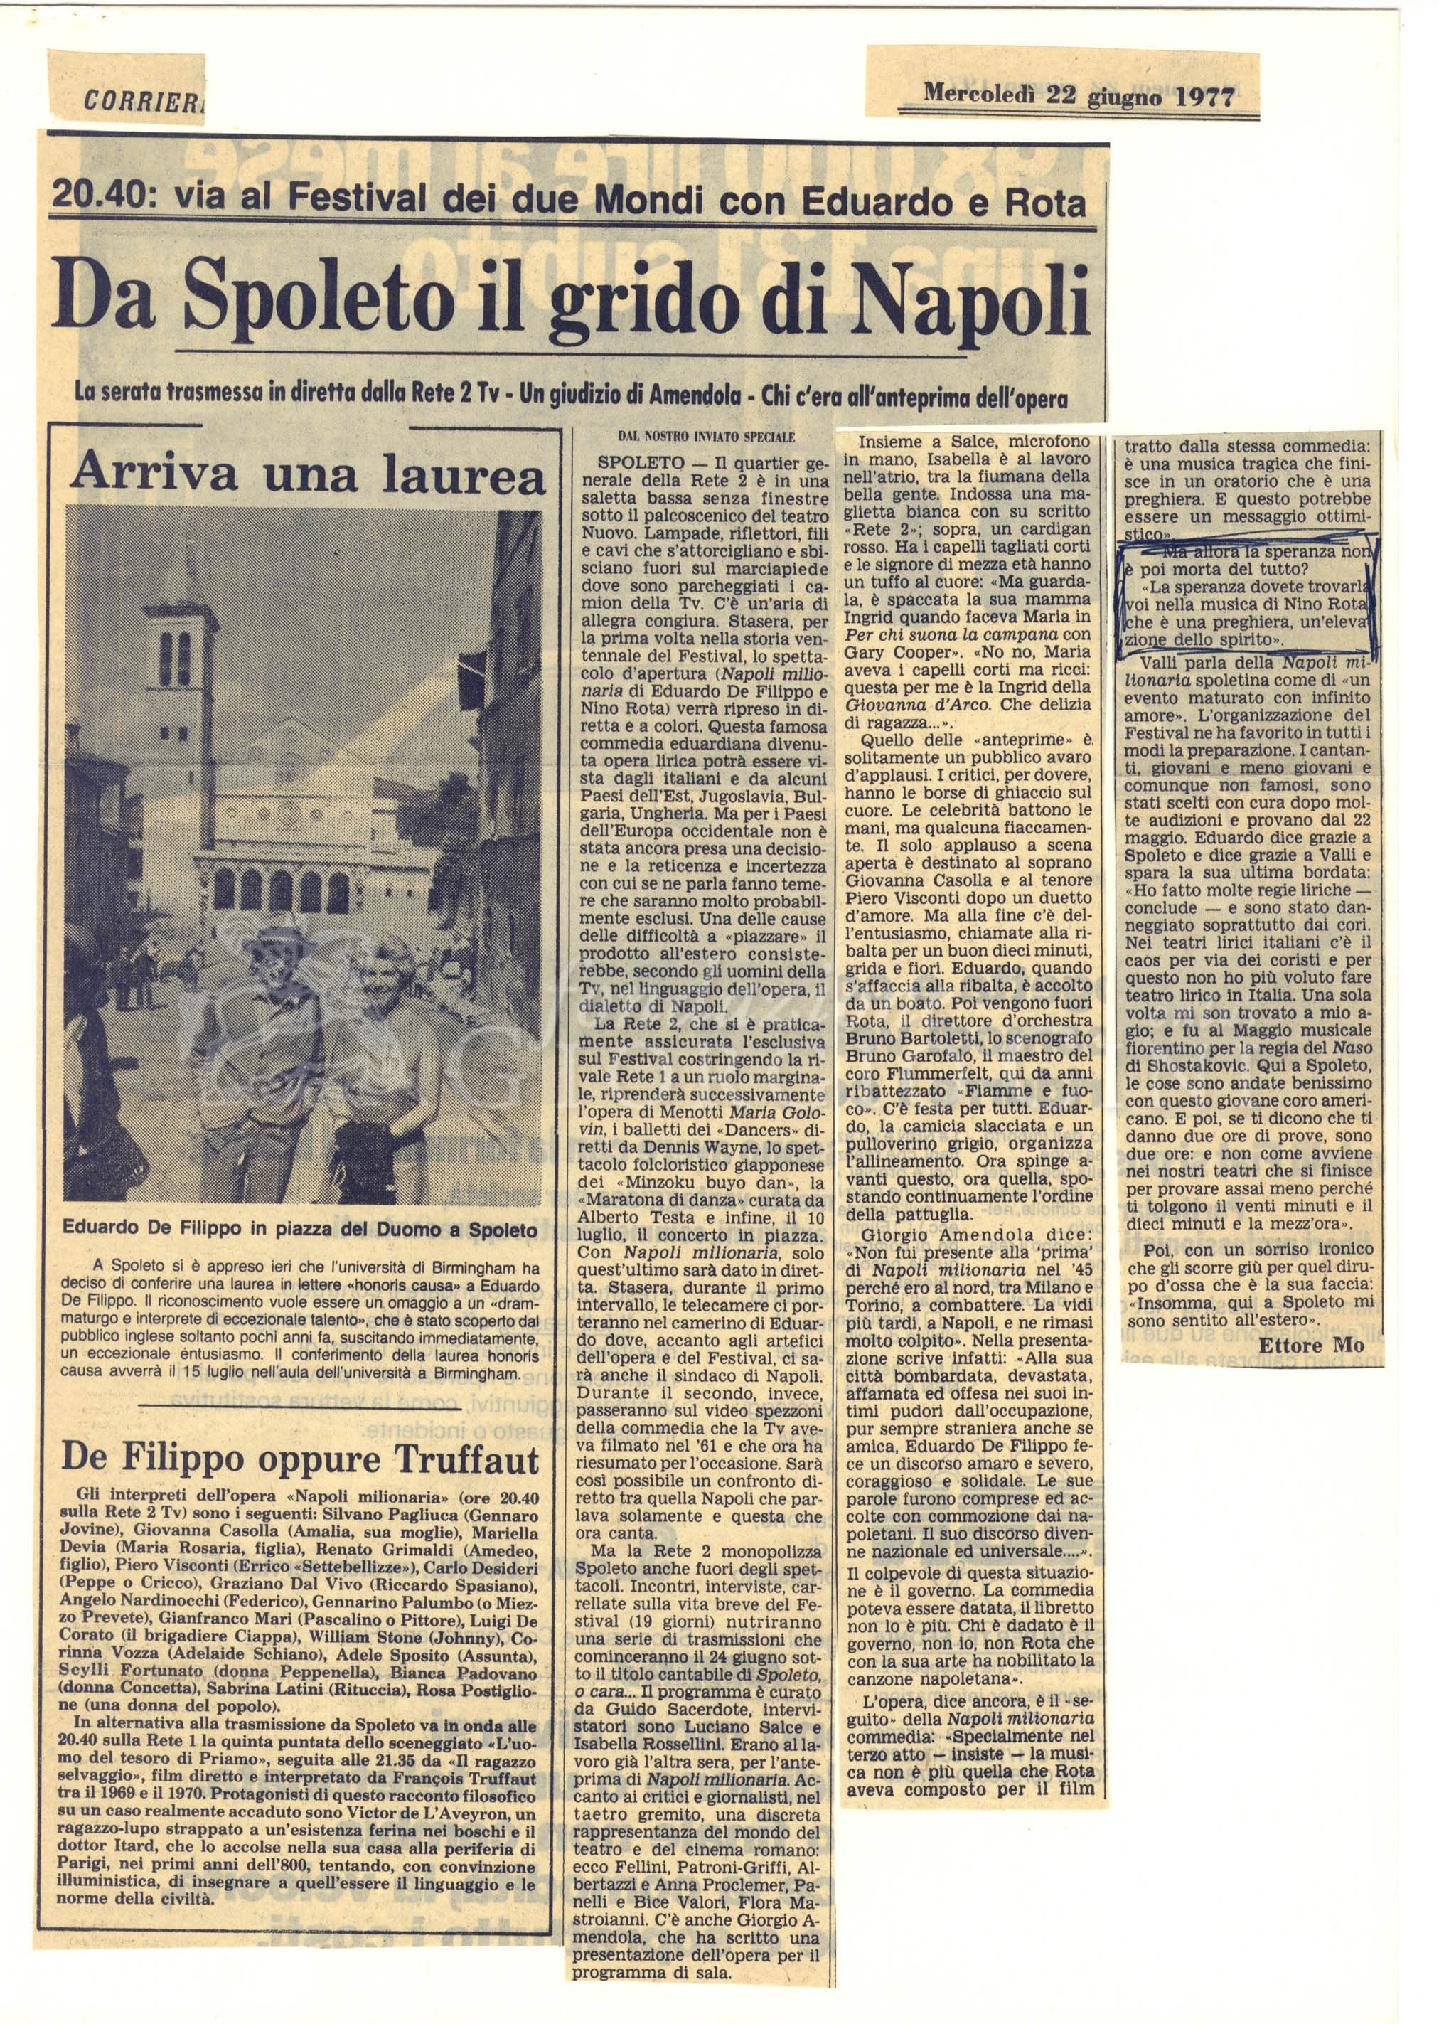 20.40: via al festival dei due Mondi con Eduardo e Rota. Da Spoleto il grido di Napoli
				 22 giugno 1977